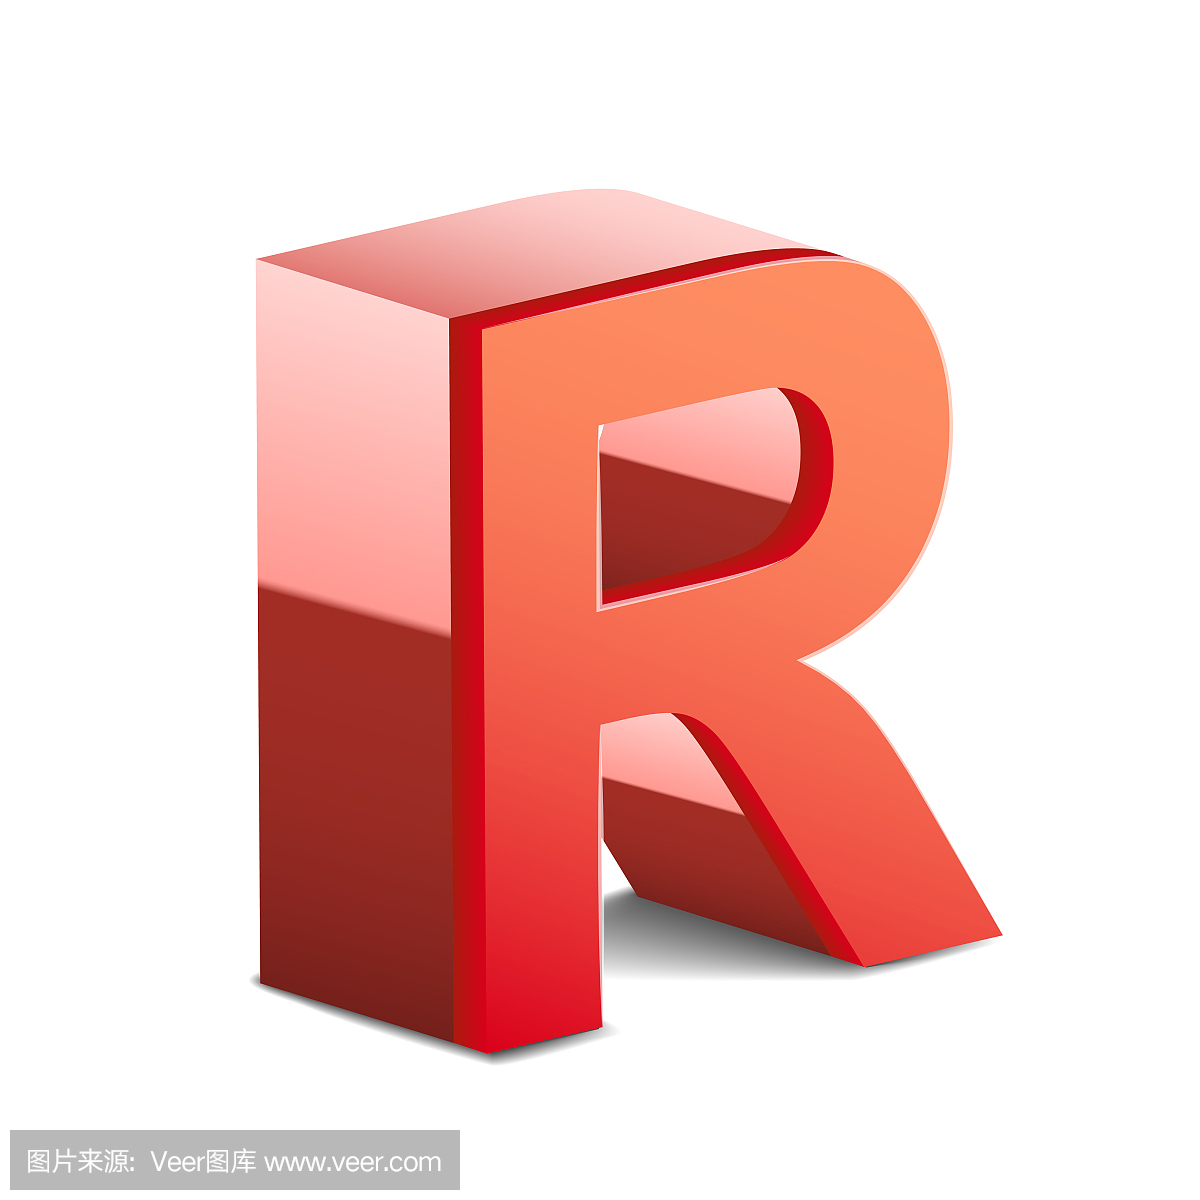 英文字母R,R,字母R的,R字母